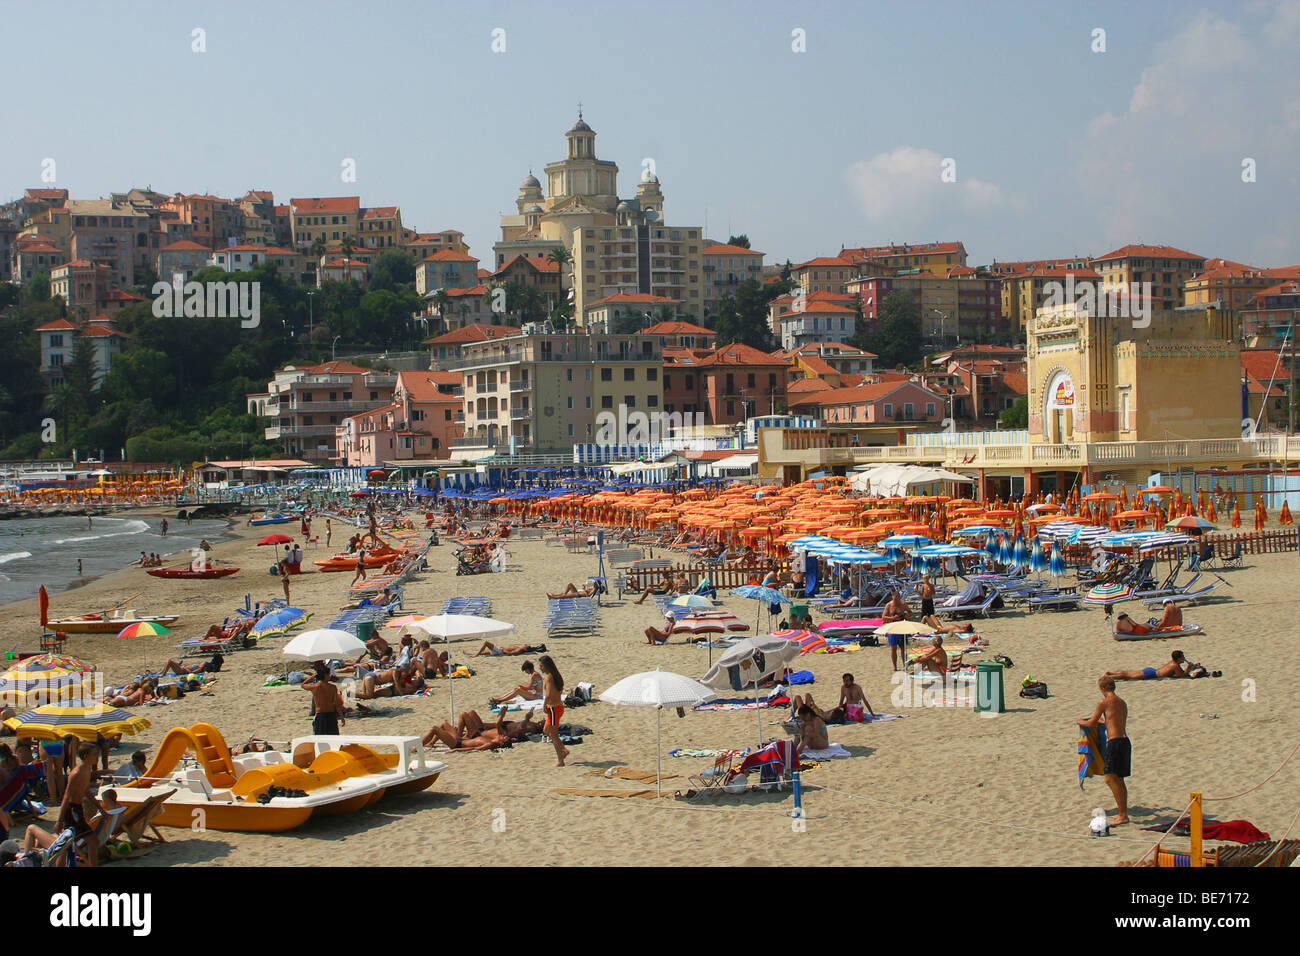 Italy, Liguria, Riviera di Ponente, Imperia, view of the beach at Porto Maurizio Stock Photo